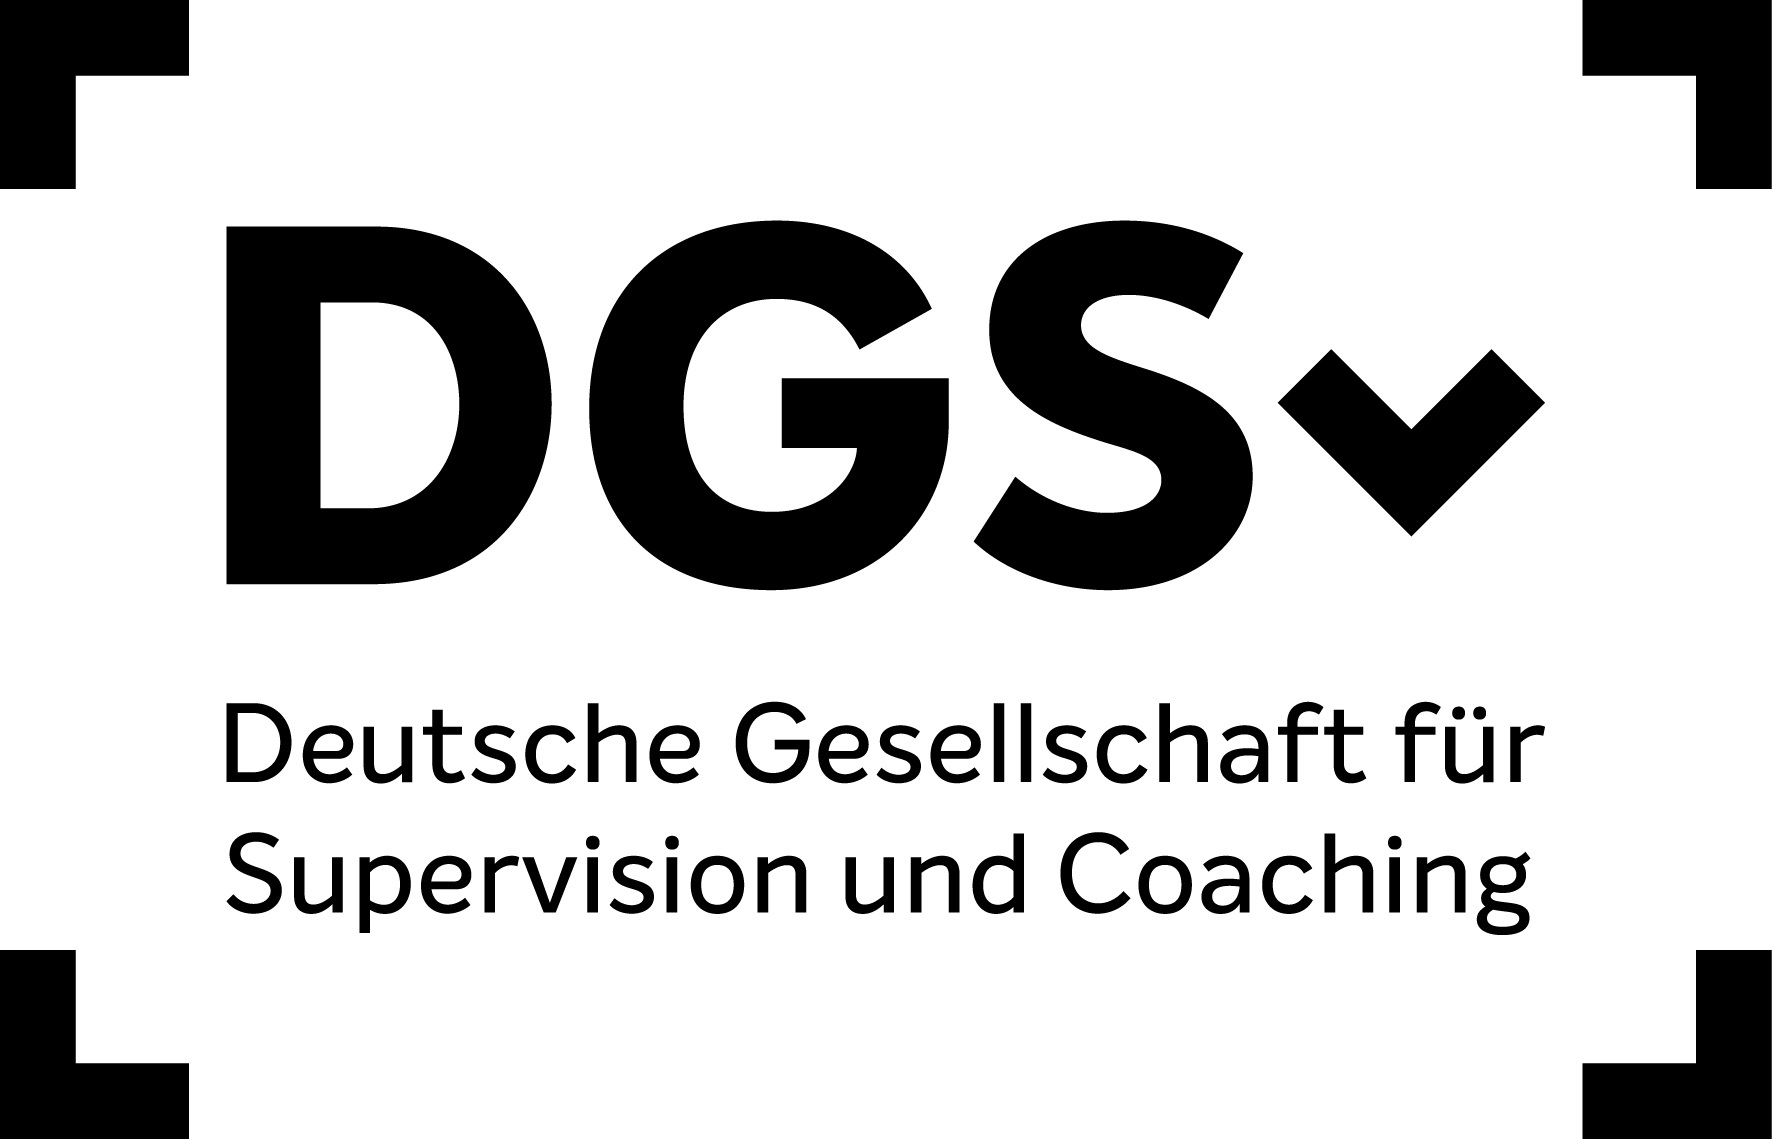 DGSv Deutsche Gesellschaft für Supervision und Coaching